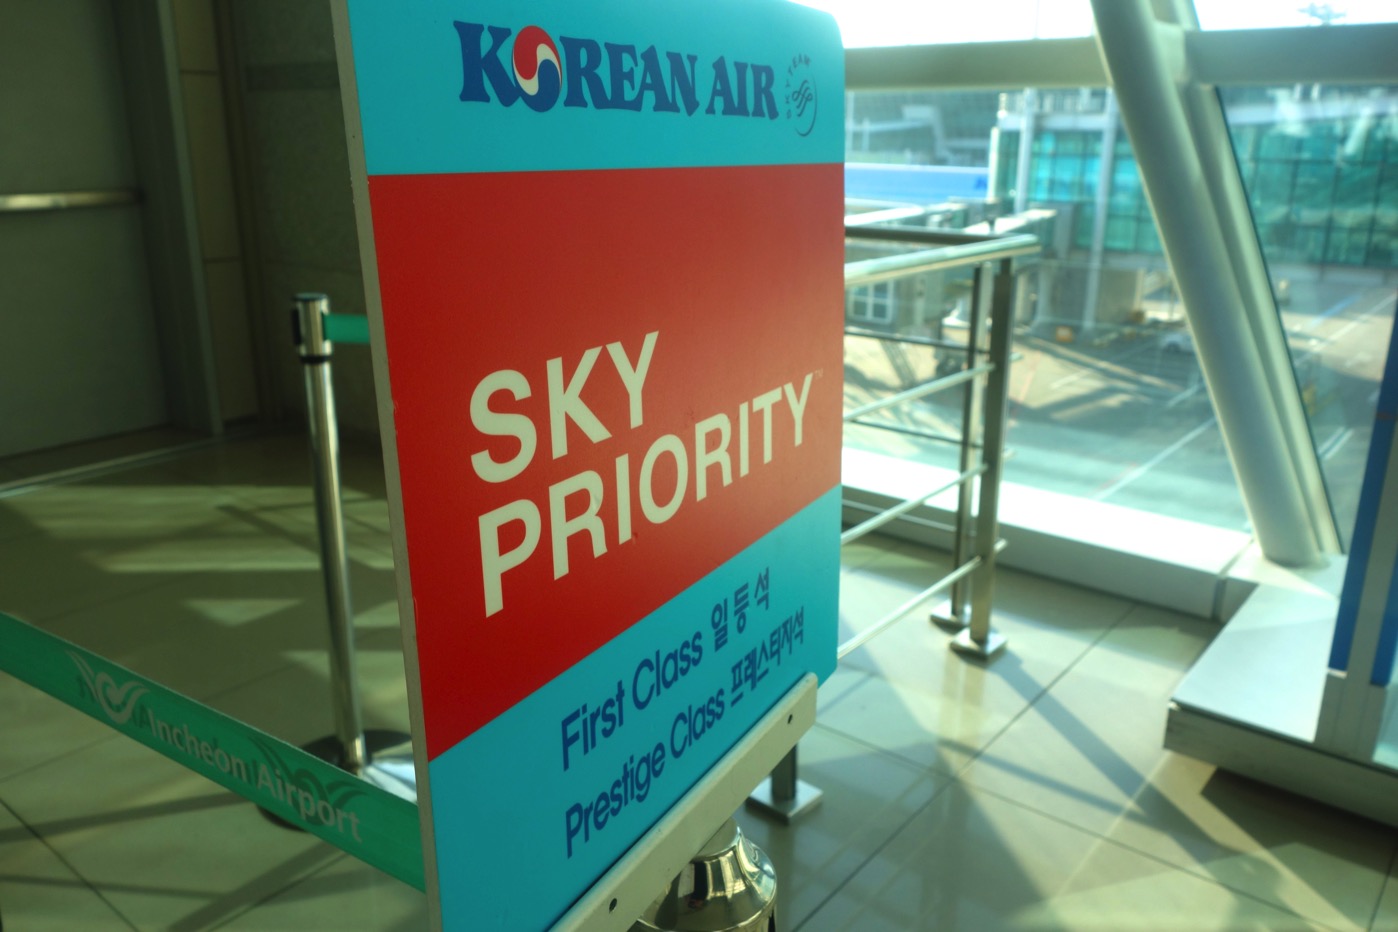 KoreanAir sky priority